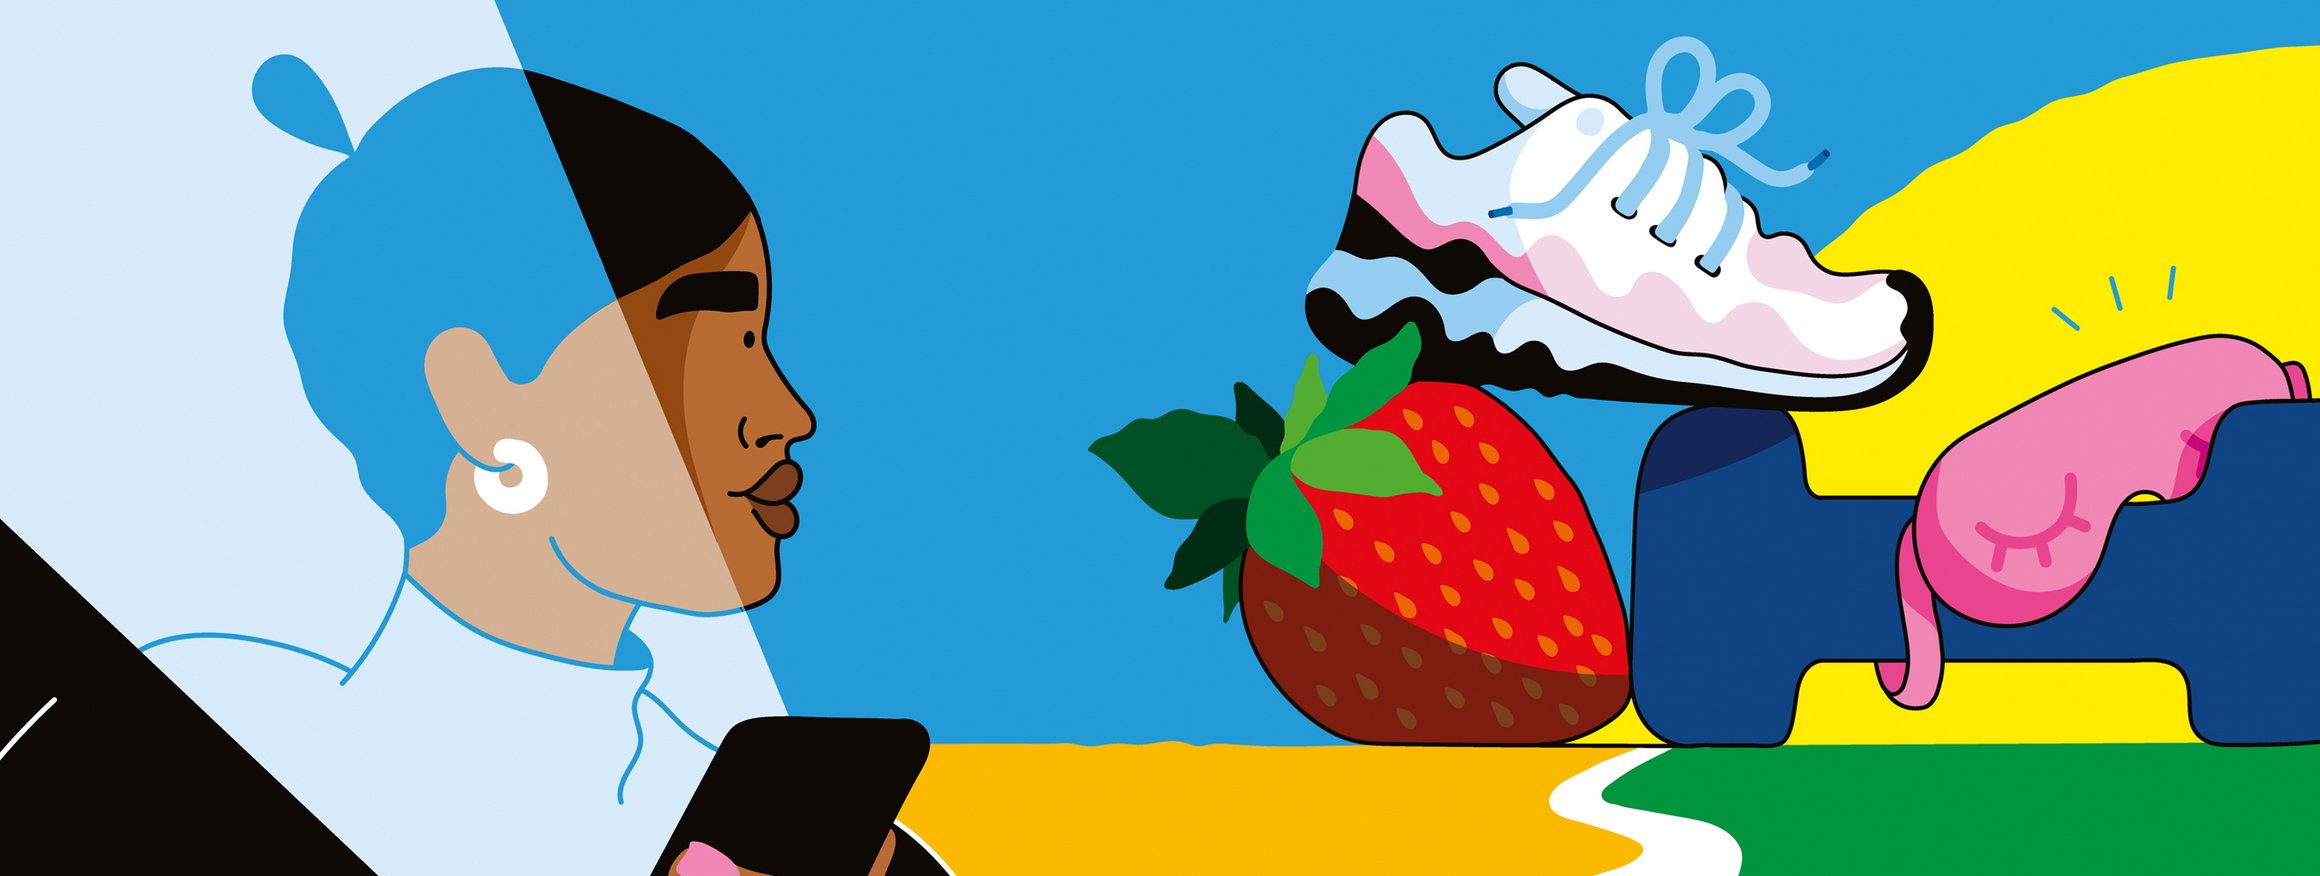 Die Illustration zeigt eine Frau mit einem Smartphone in der Hand, dahinter eine Straße in der am Horizont eine Erdbeere, ein Sneaker und eine Fitness-Hantel zu sehen ist